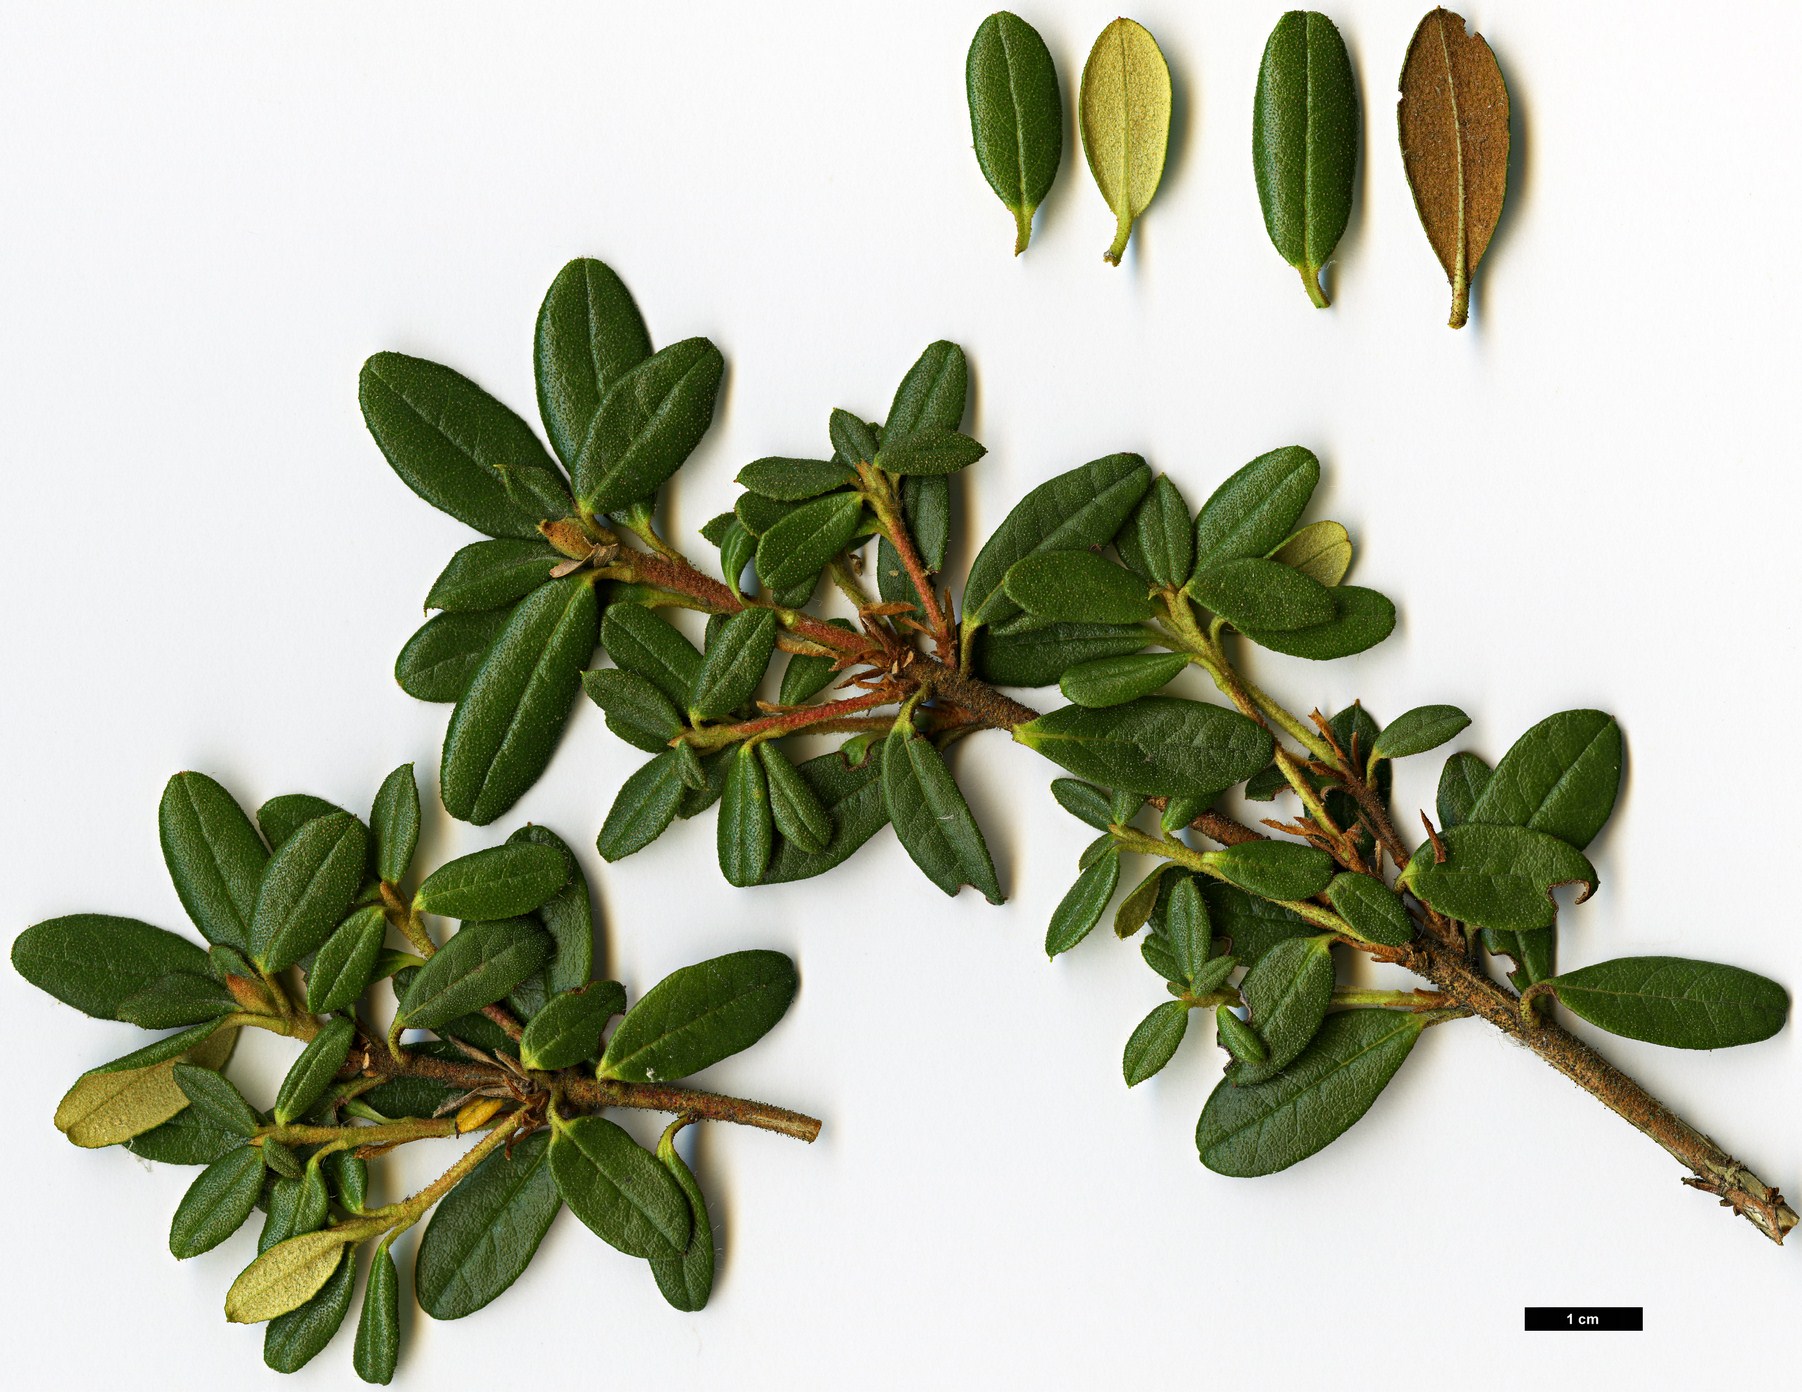 High resolution image: Family: Ericaceae - Genus: Rhododendron - Taxon: sargentianum - SpeciesSub: 'Whitebait' WAIT